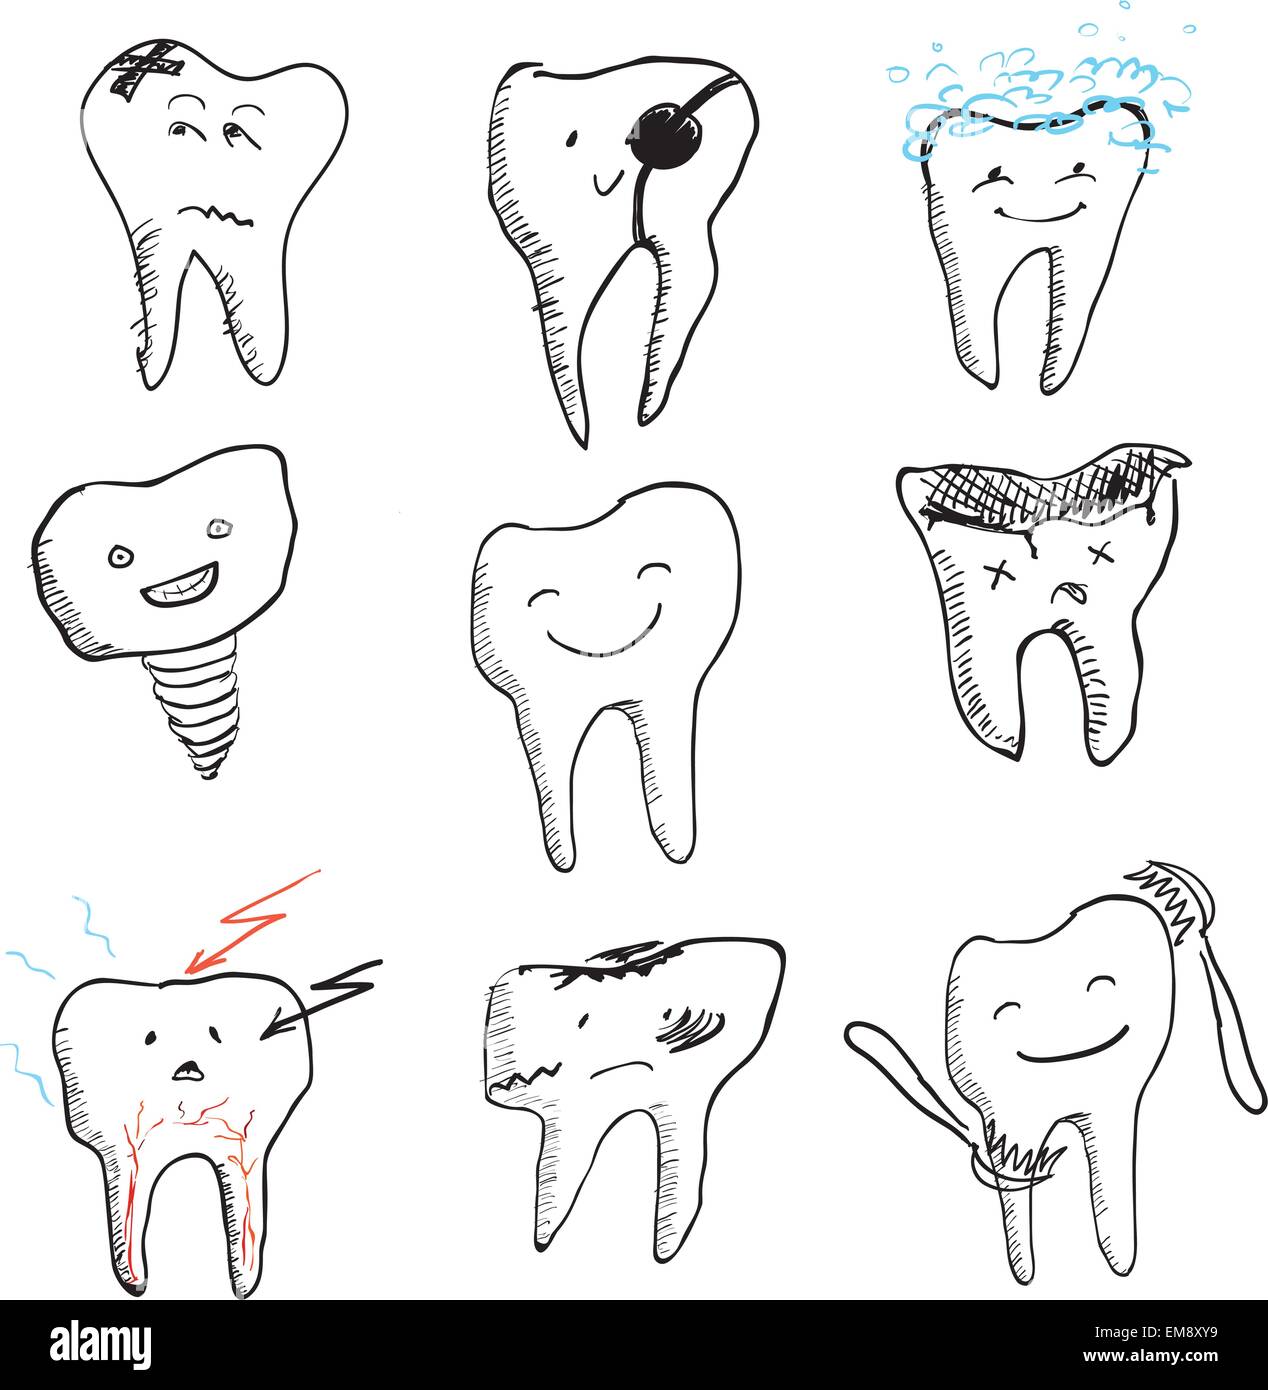 Disegnato a mano i denti divertente, vettore raccolta di icone Illustrazione Vettoriale